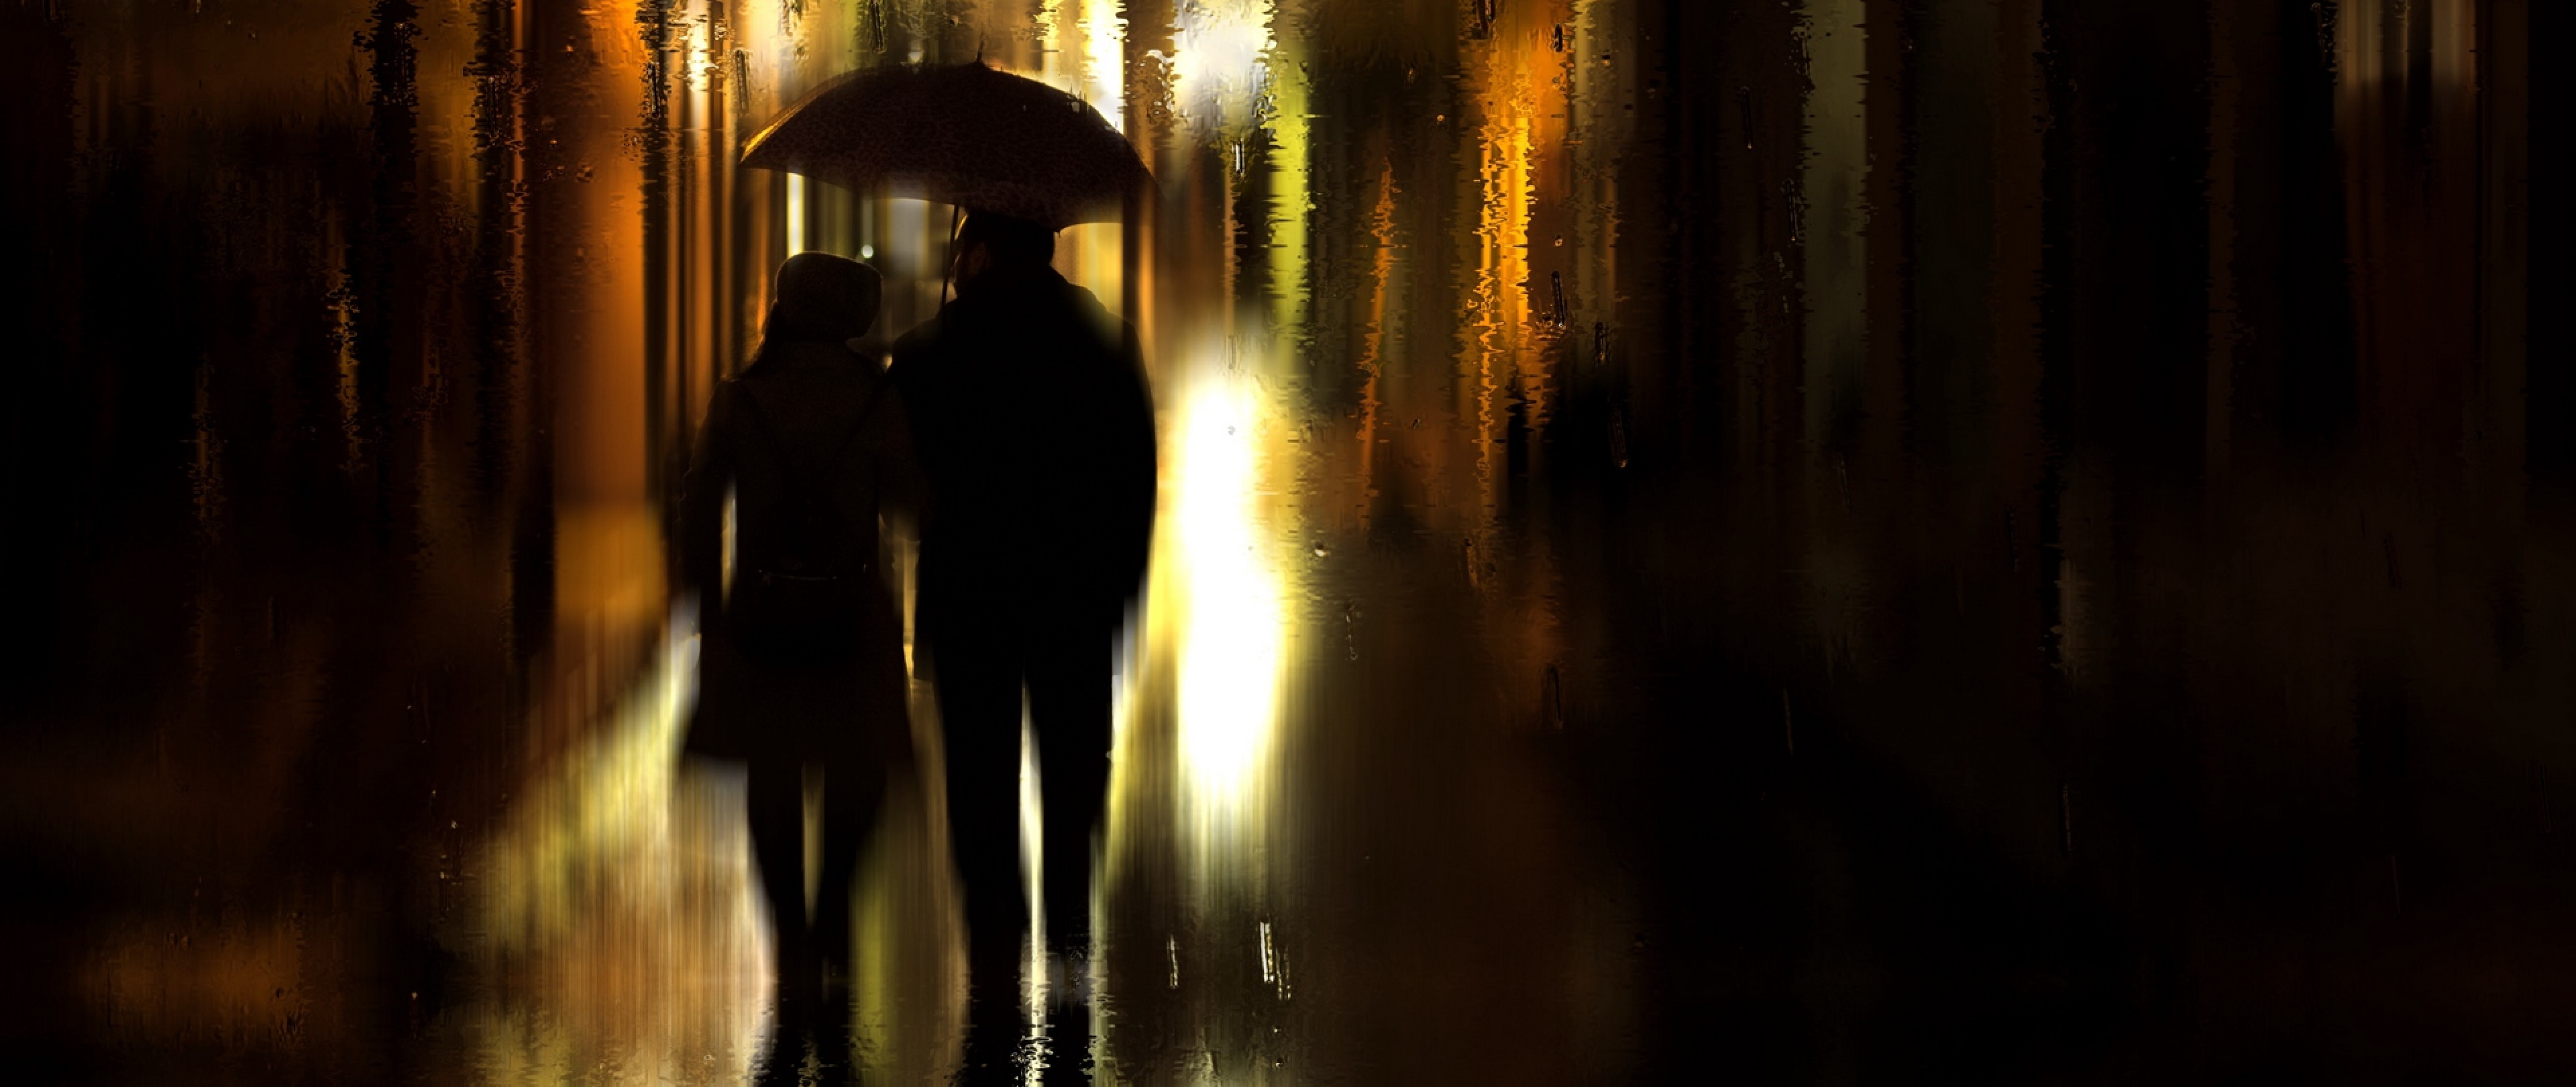 Coupl walking on a rainy night HD Wallpaper 4K Ultra HD Wide TV